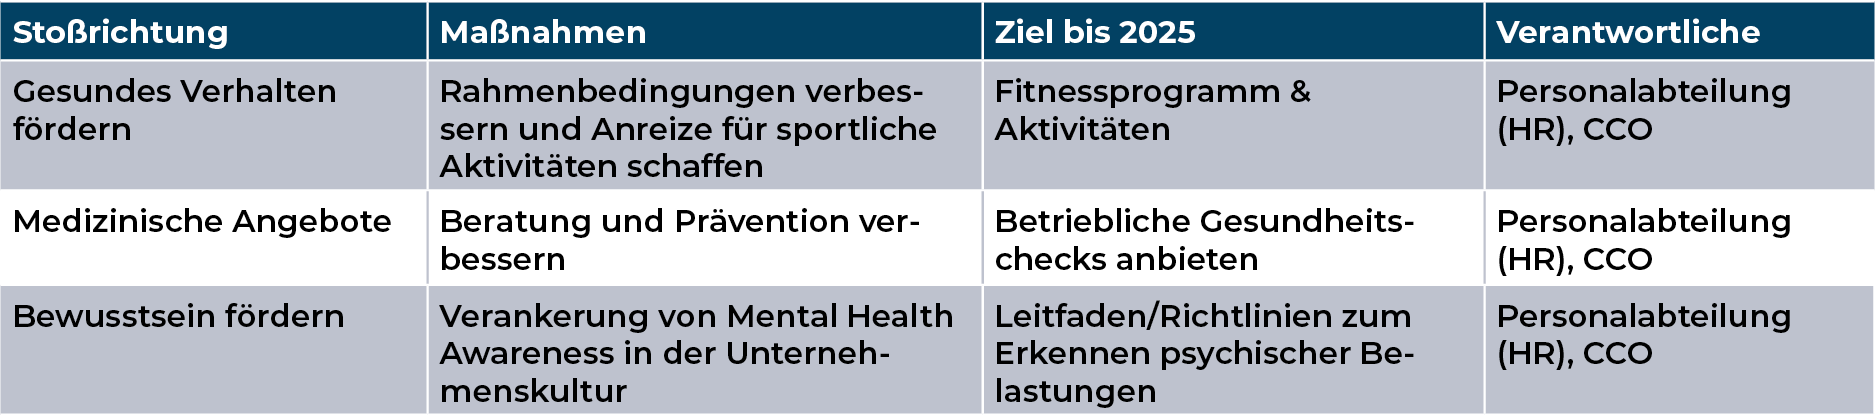 Mediengruppe Wiener Zeitung Nachhaltigkeitsbericht 2023 - mgwz_soziales_arbeitssicherheit